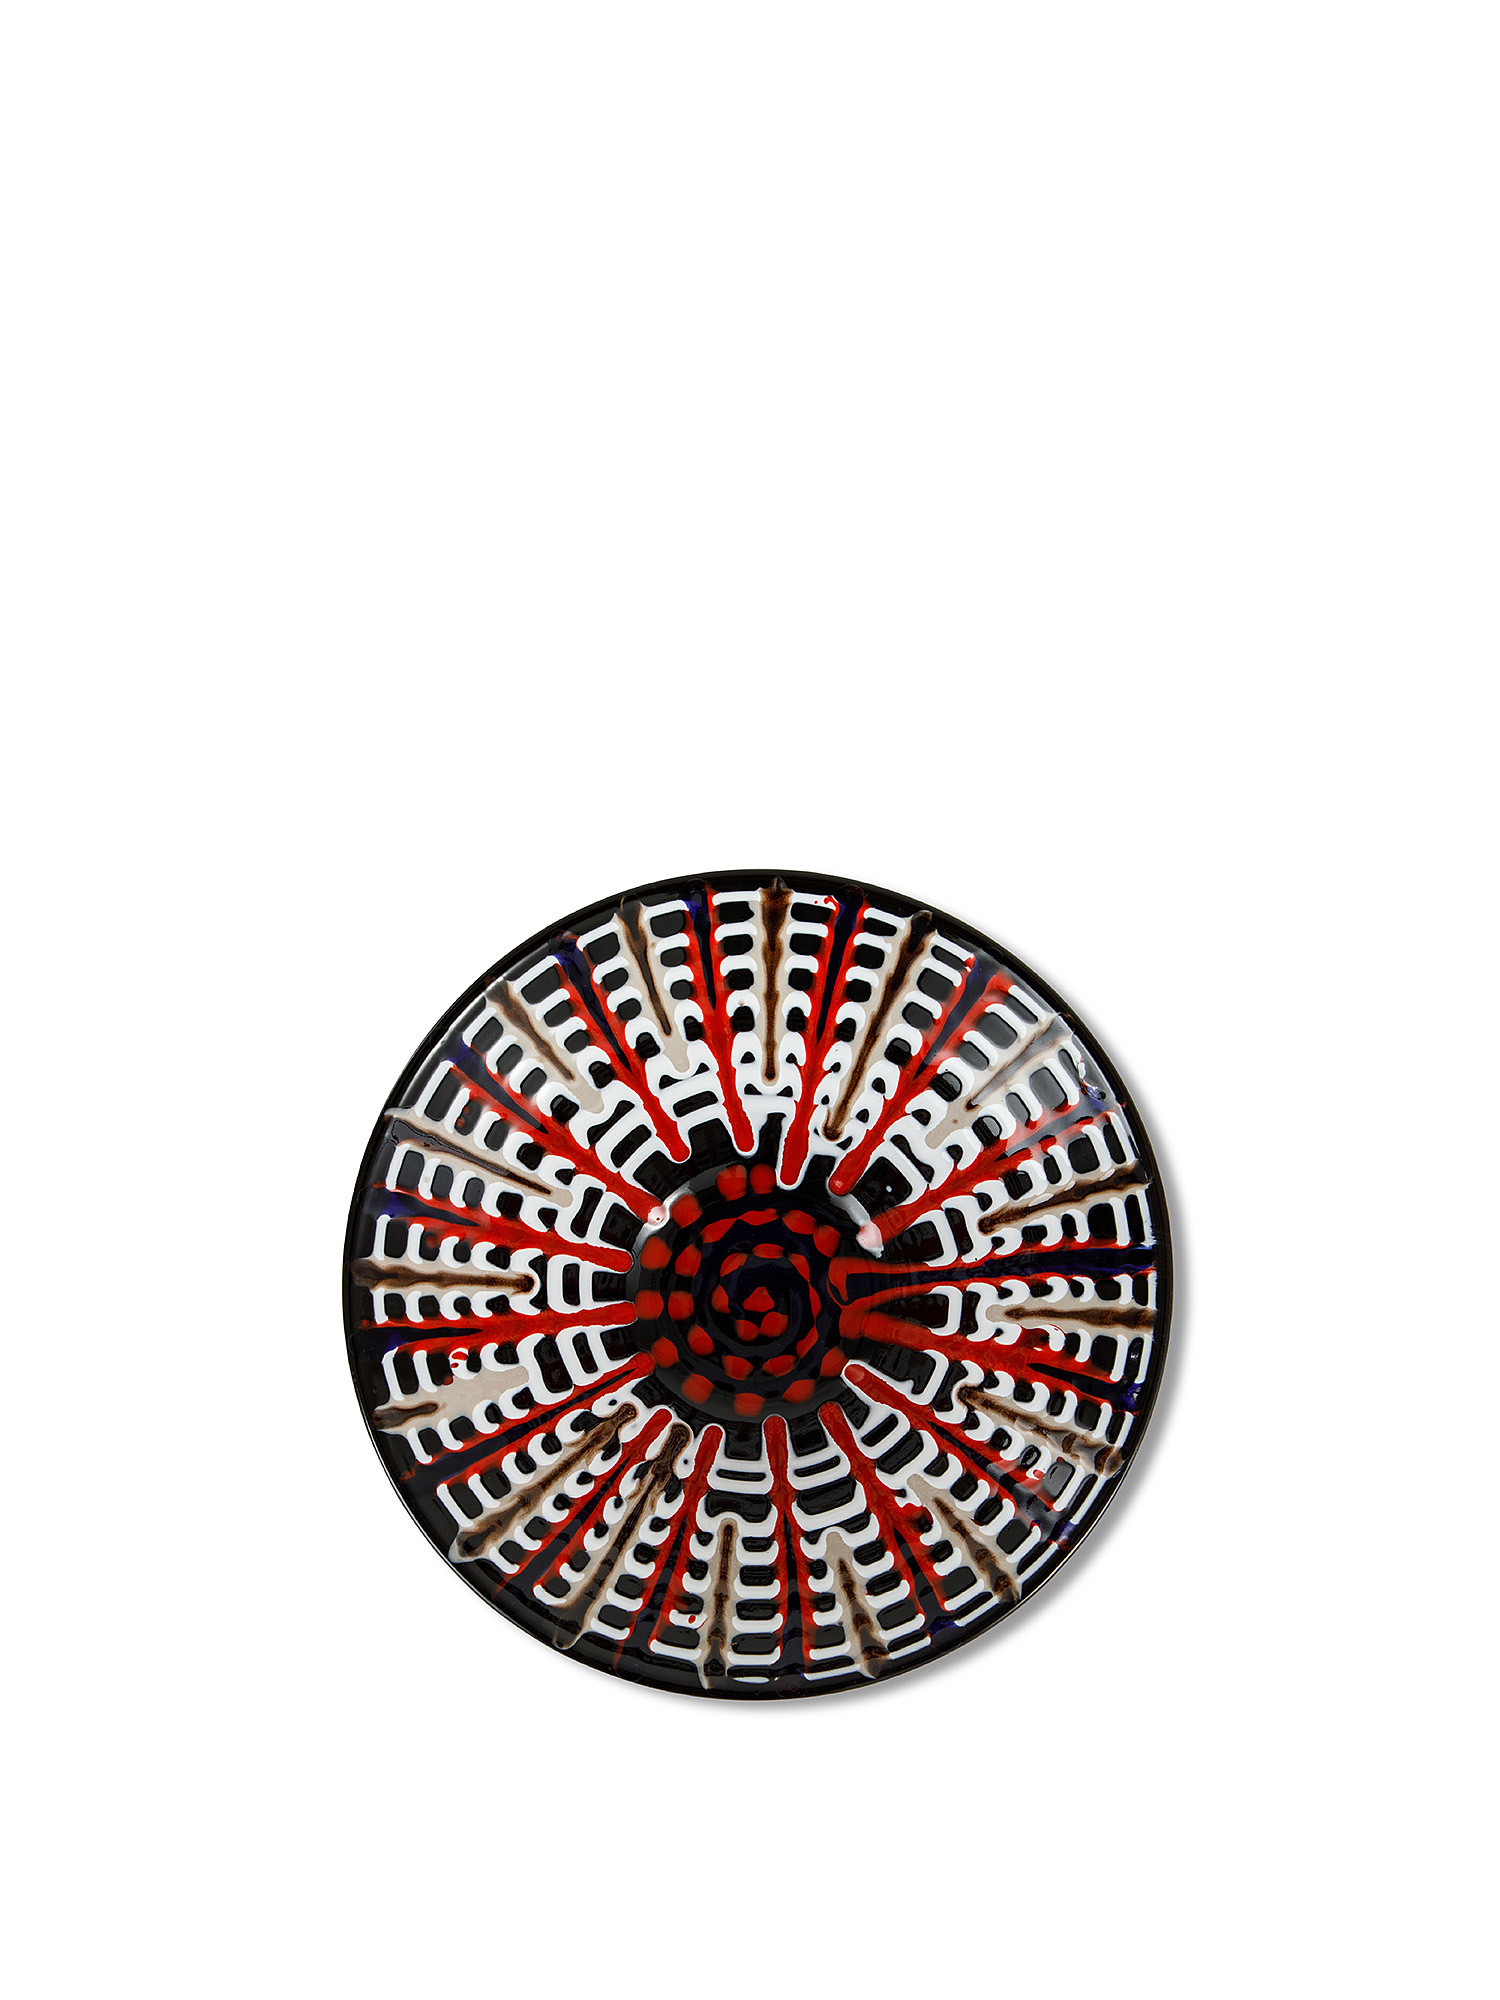 Coppa ceramica di Grottaglie realizzata e dipinta a mano, Multicolor, large image number 4